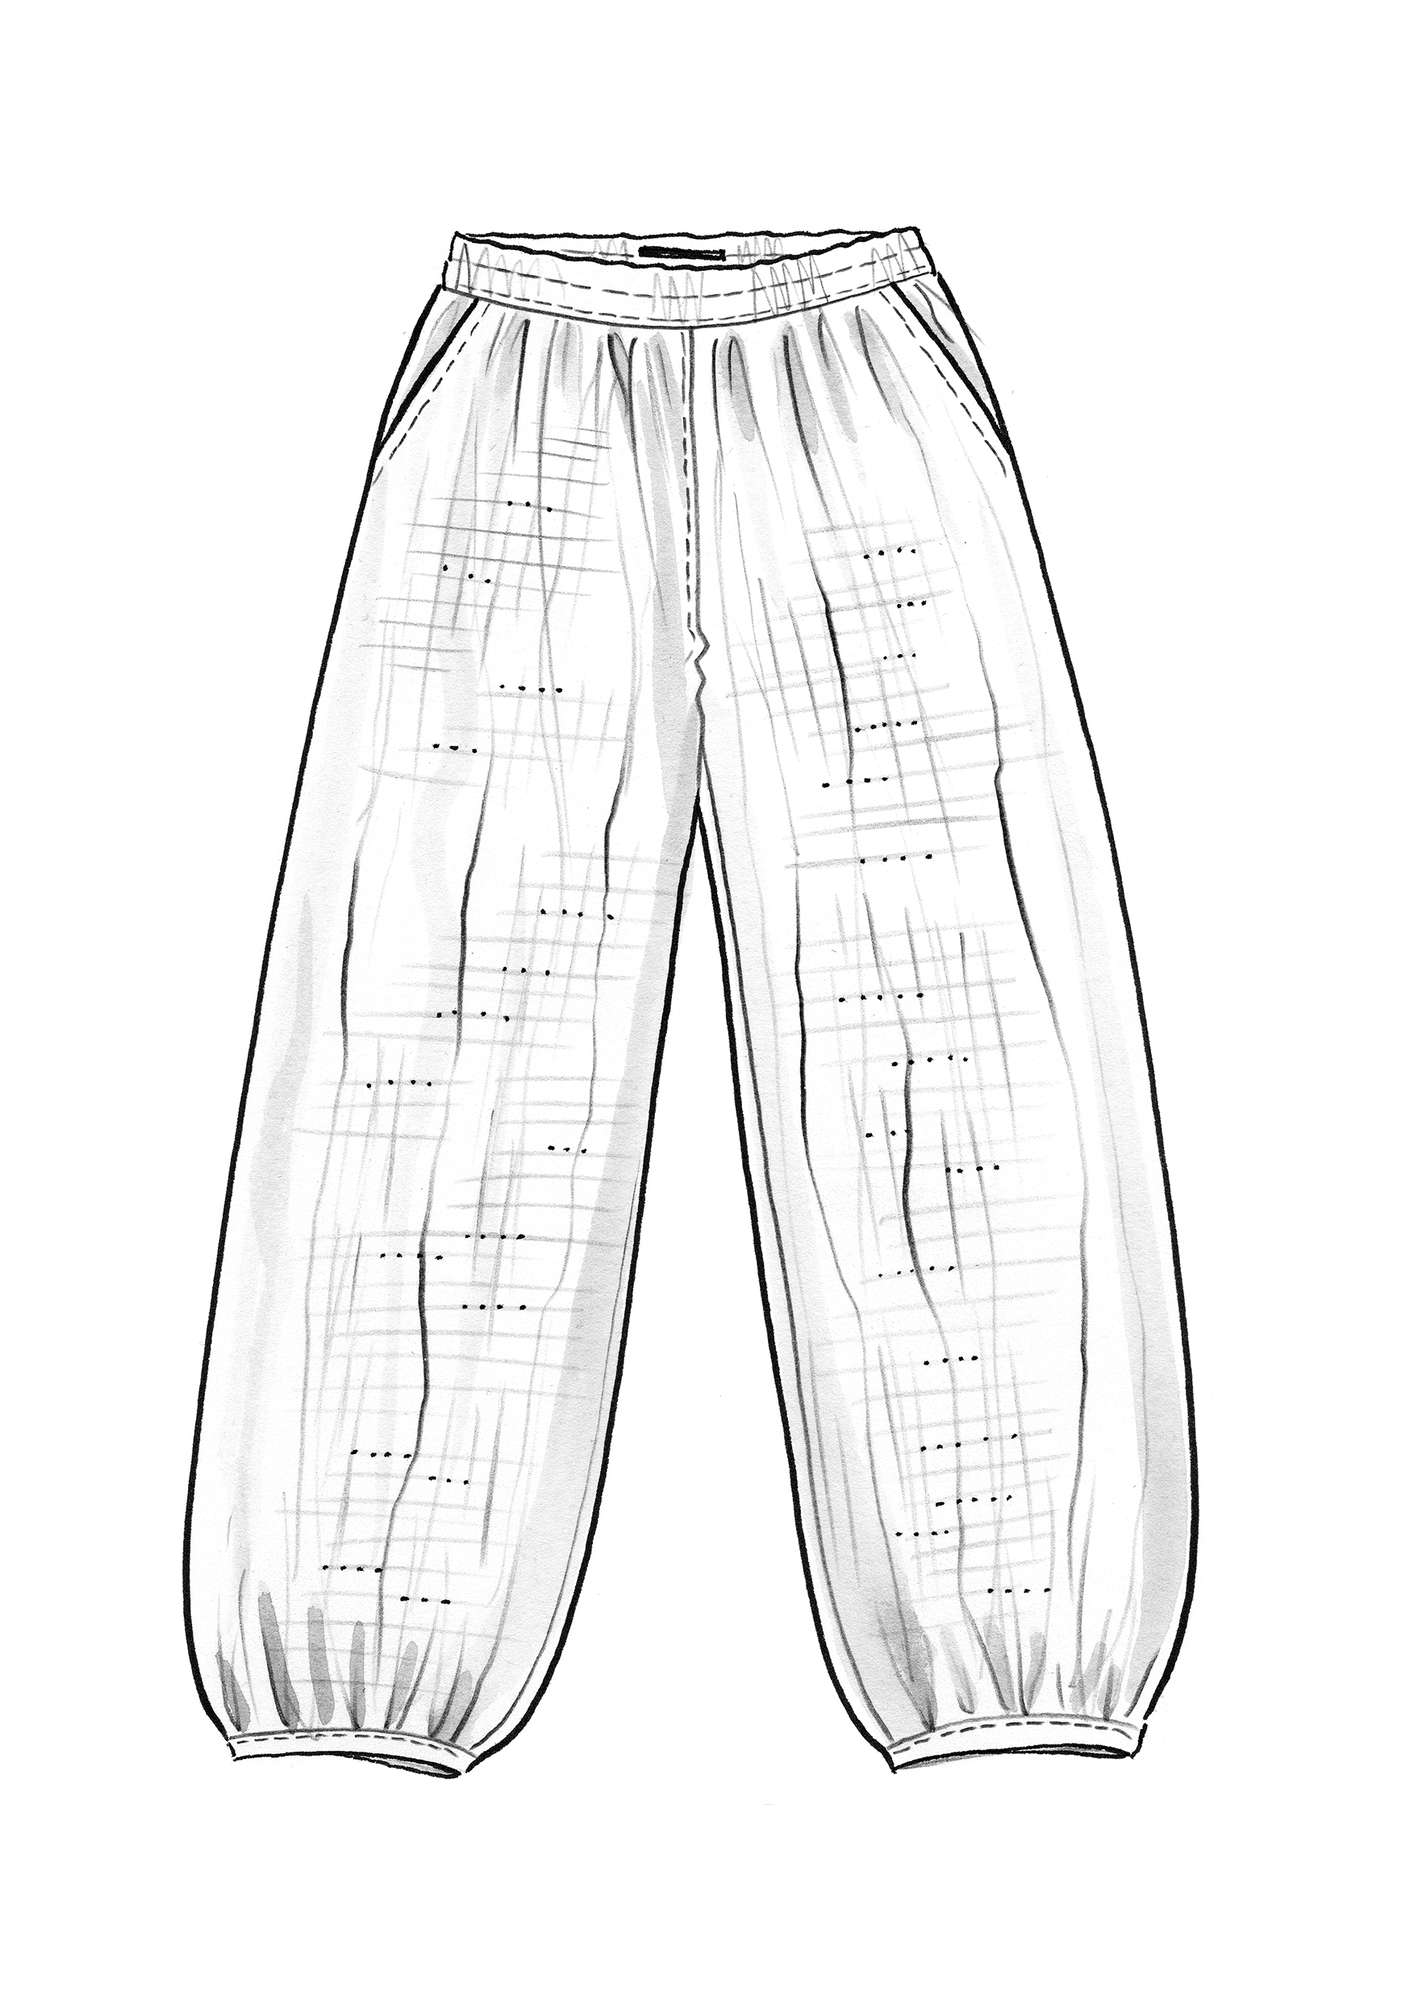 Pants in cotton/modal/rayon woven fabric indigo